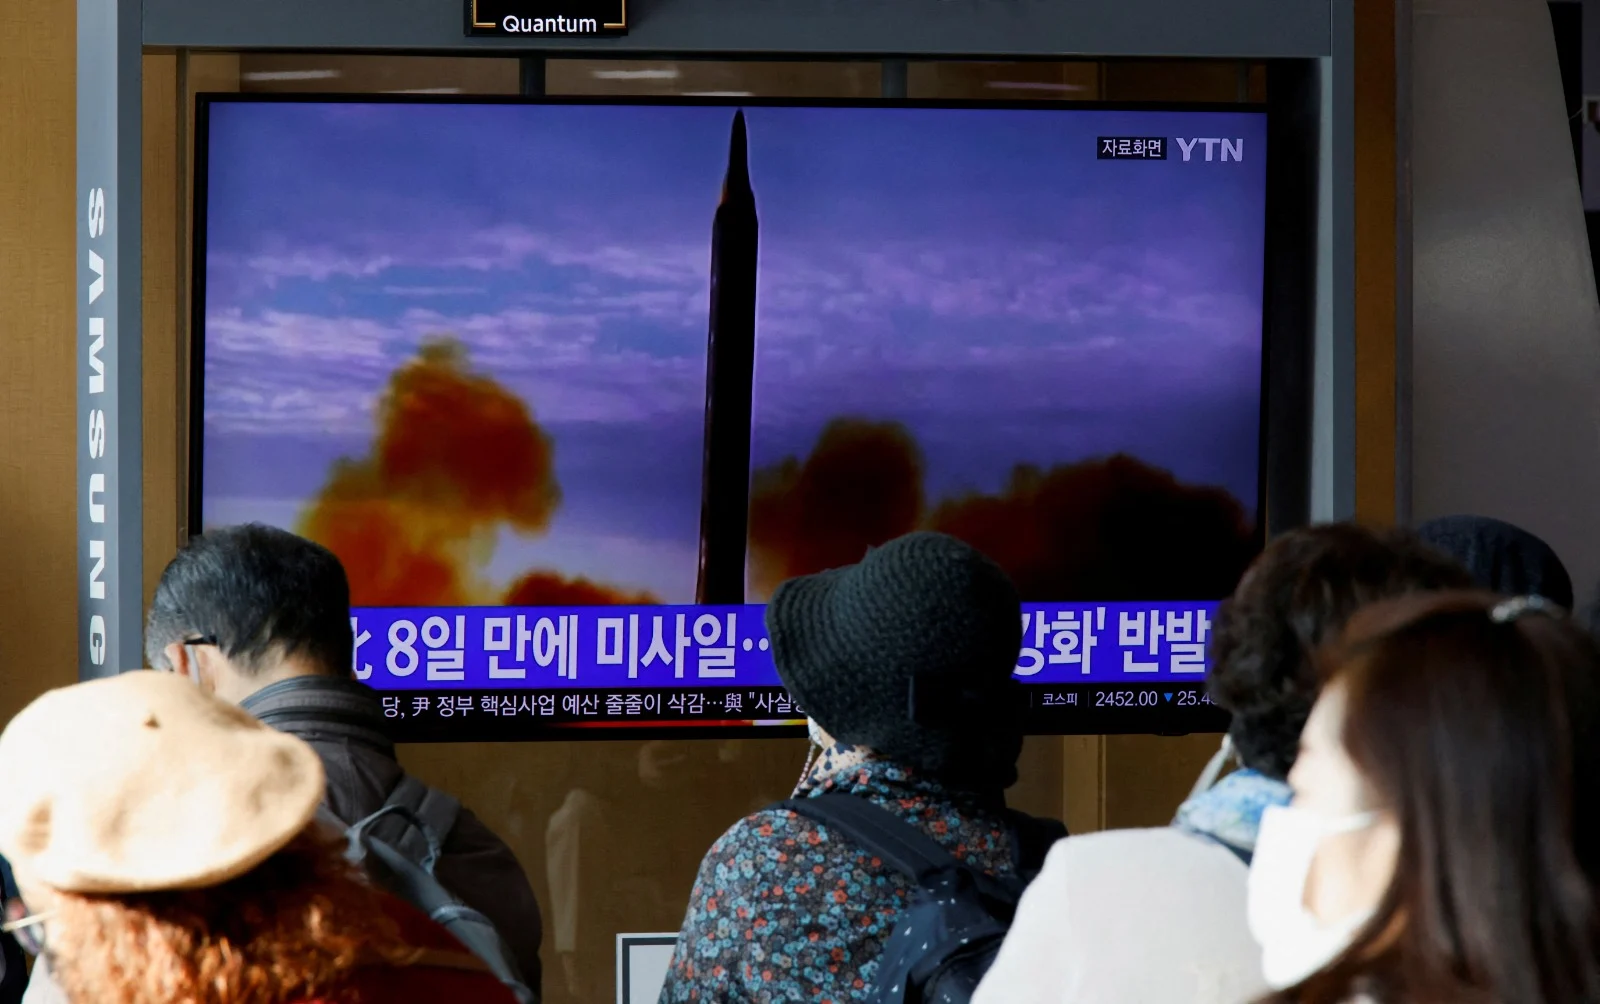 אזרחים בסיאול בירת דרום קוריאה צופים בדיווחי החדשות על שיגור הטיל מצפון קוריאה